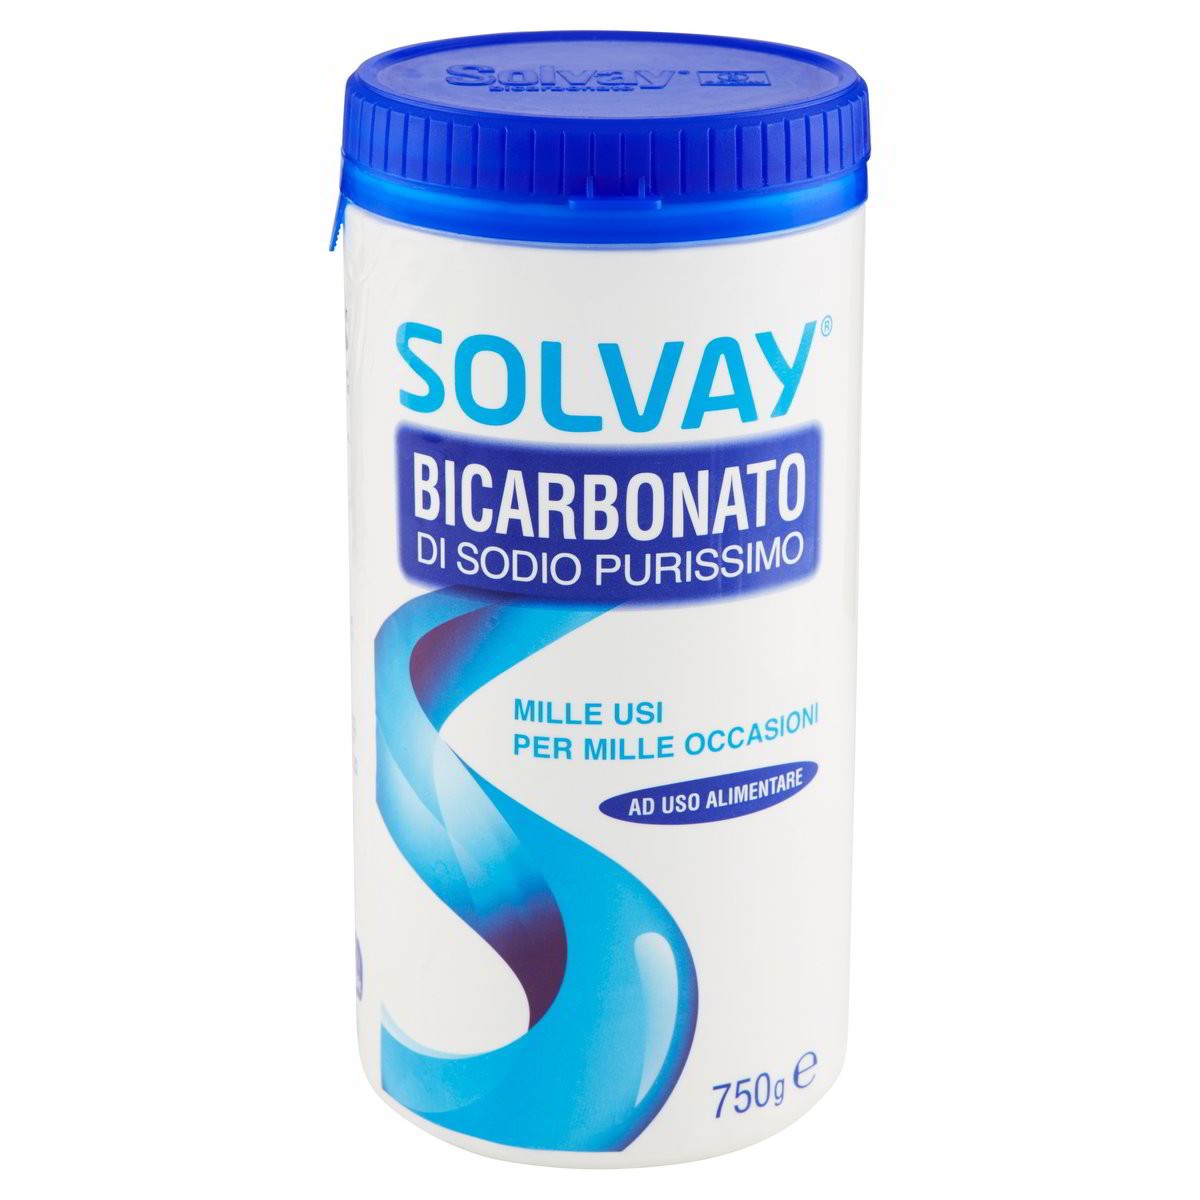 Solvay Bicarbonato di sodio purissimo